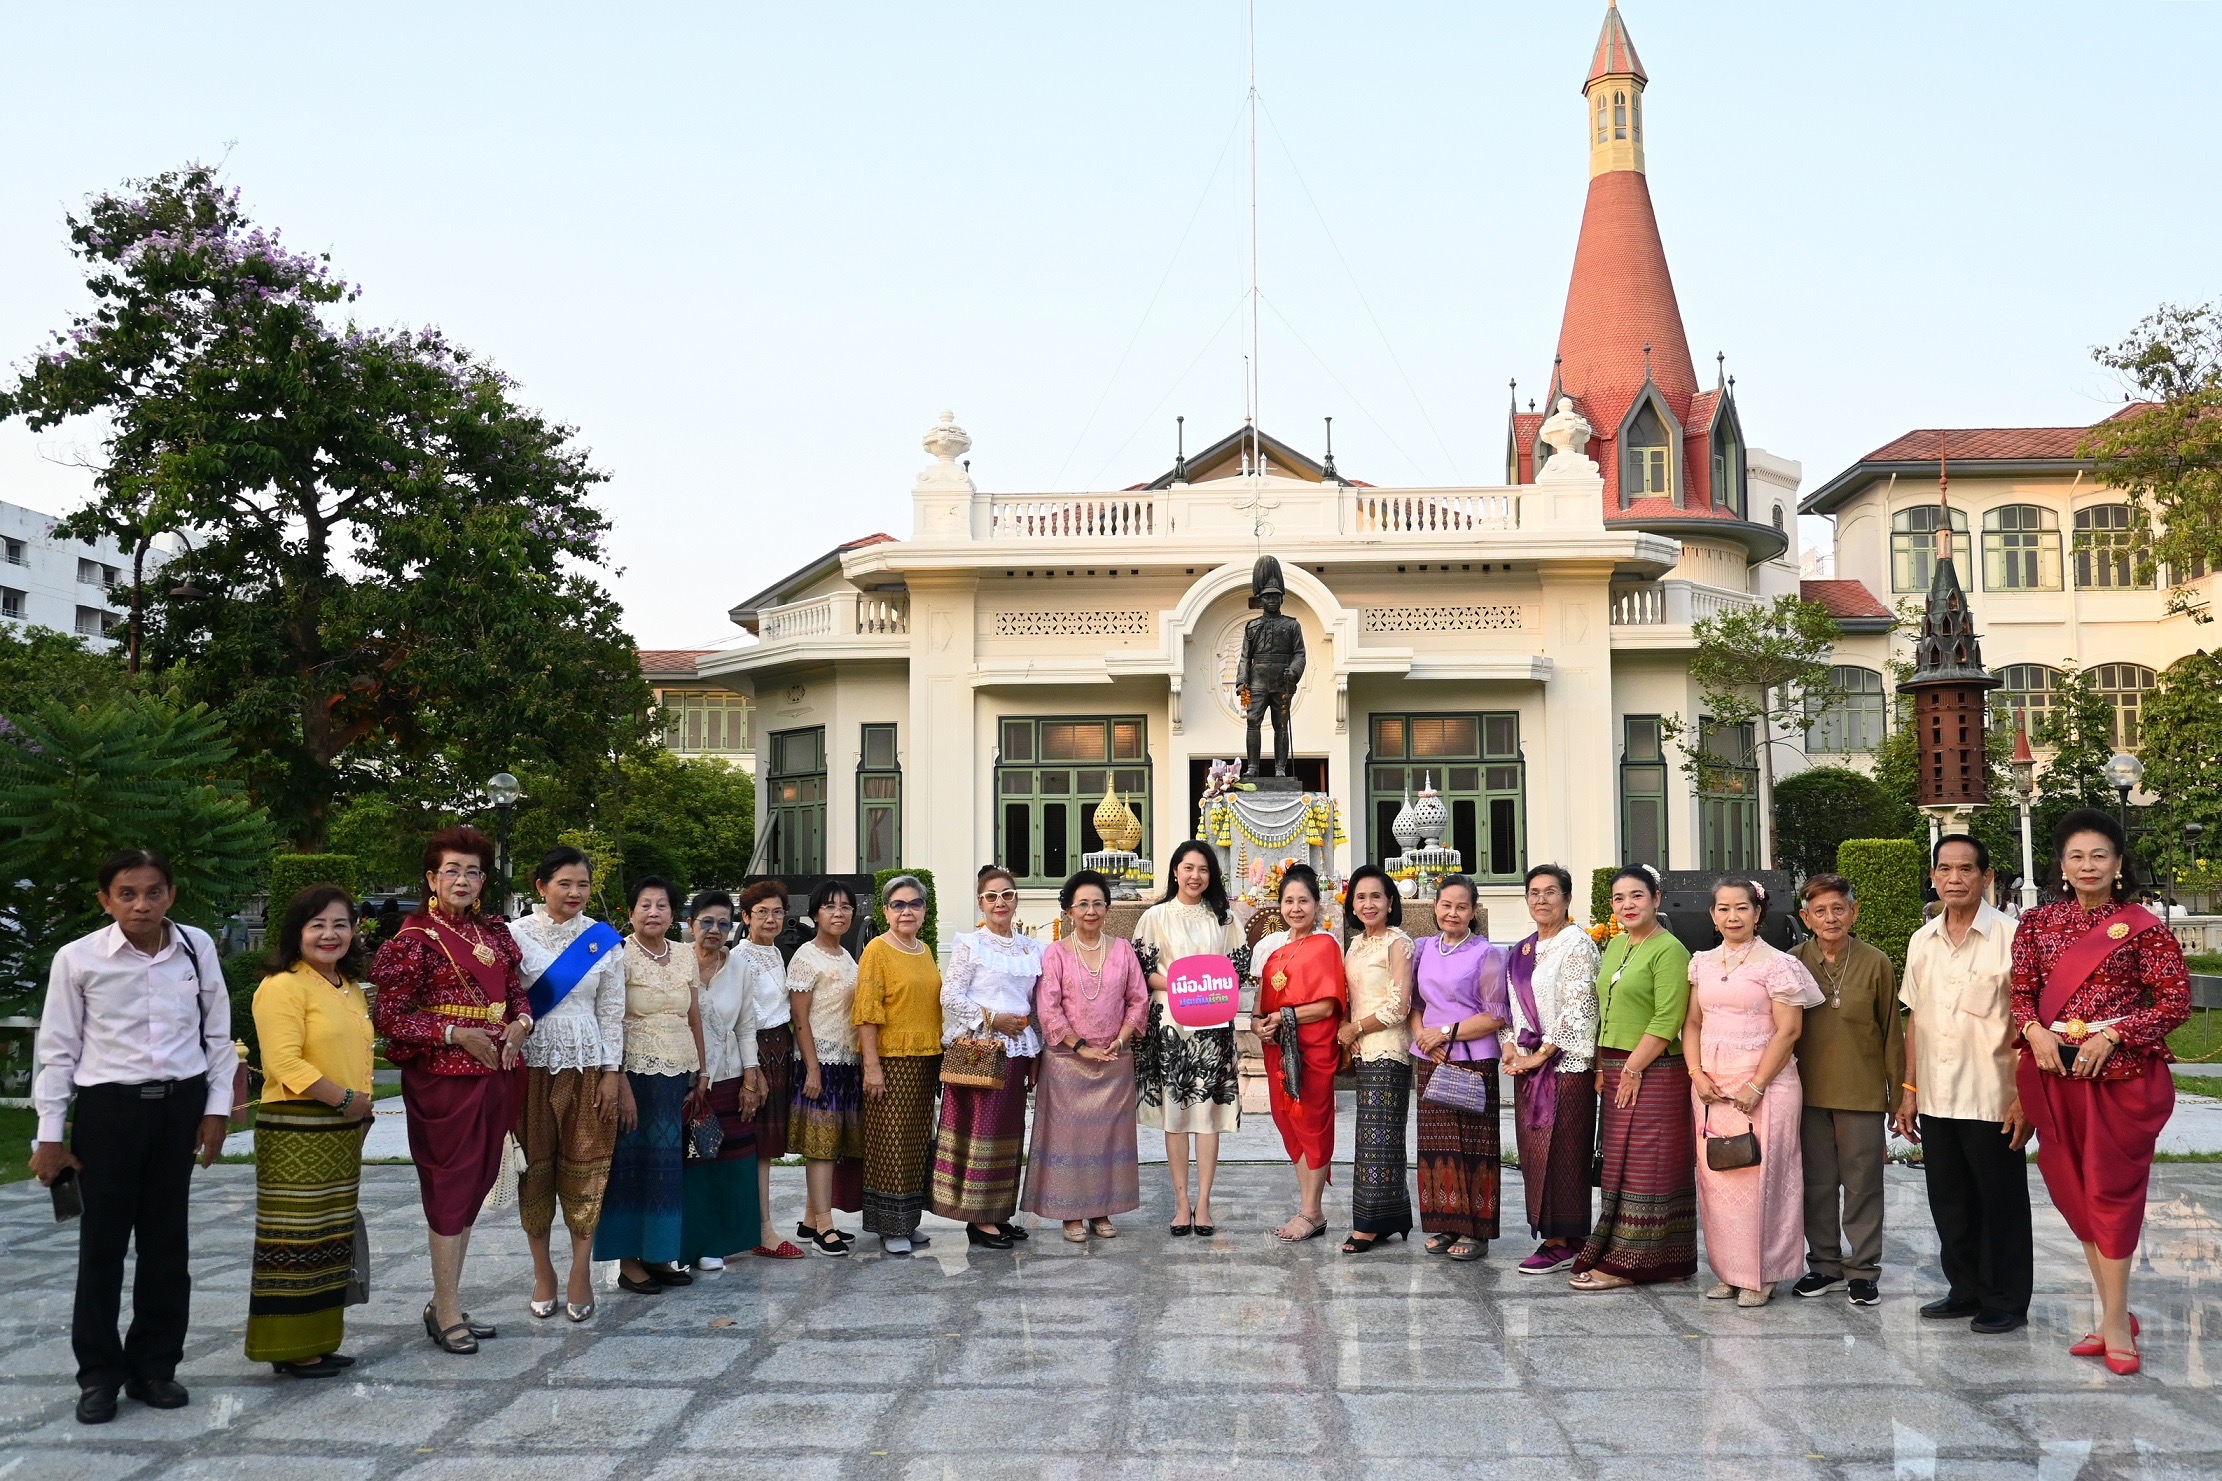 เมืองไทยประกันชีวิต ส่งมอบความสุขและรอยยิ้ม พาคณะผู้สูงอายุจากเขตห้วยขวาง และ โรงเรียนผู้สูงอายุเขตดนิ แดง เข้าร่วมชมงาน “101 ปี พระราชวังพญาไท” THE GLORY OF SIAM